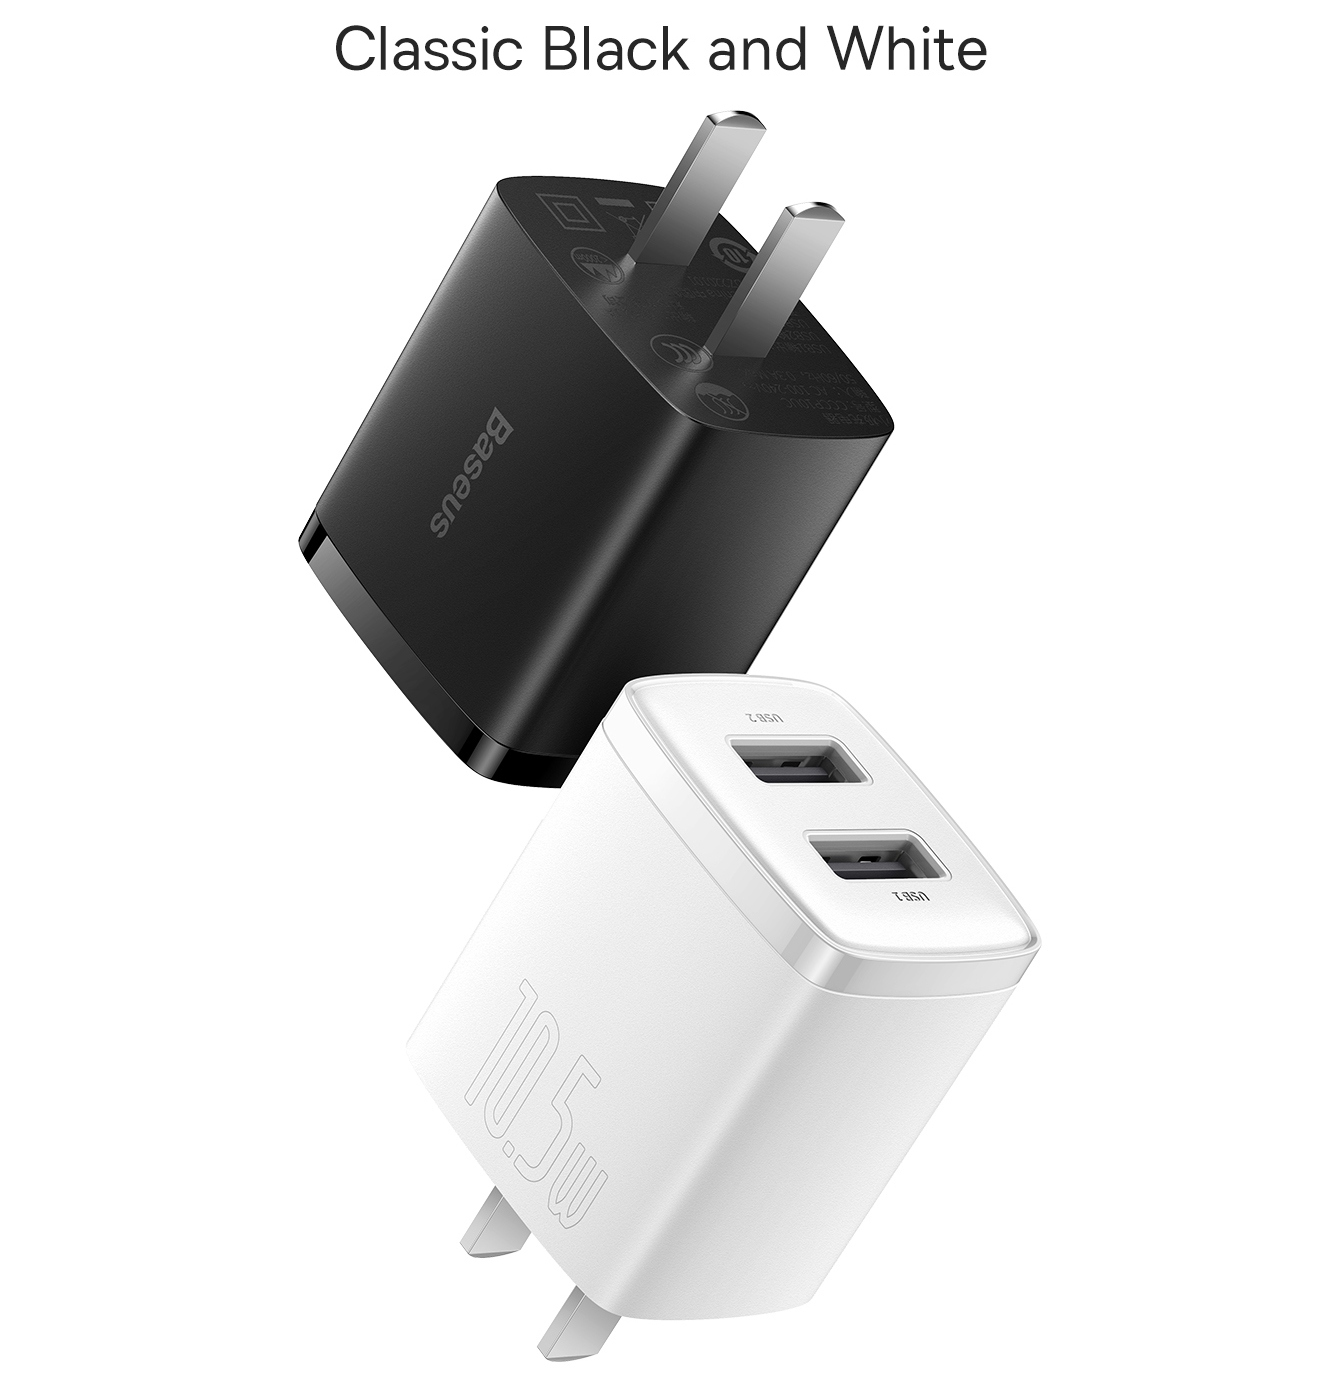 Cóc củ sạc adapter sạc nhanh 10.5W đa năng 2 cổng USB A hiệu Baseus Compact Charger trang bị chip sạc thông minh,  công nghệ tản nhiệt BCT, chân cắm US-UK - hàng nhập khẩu